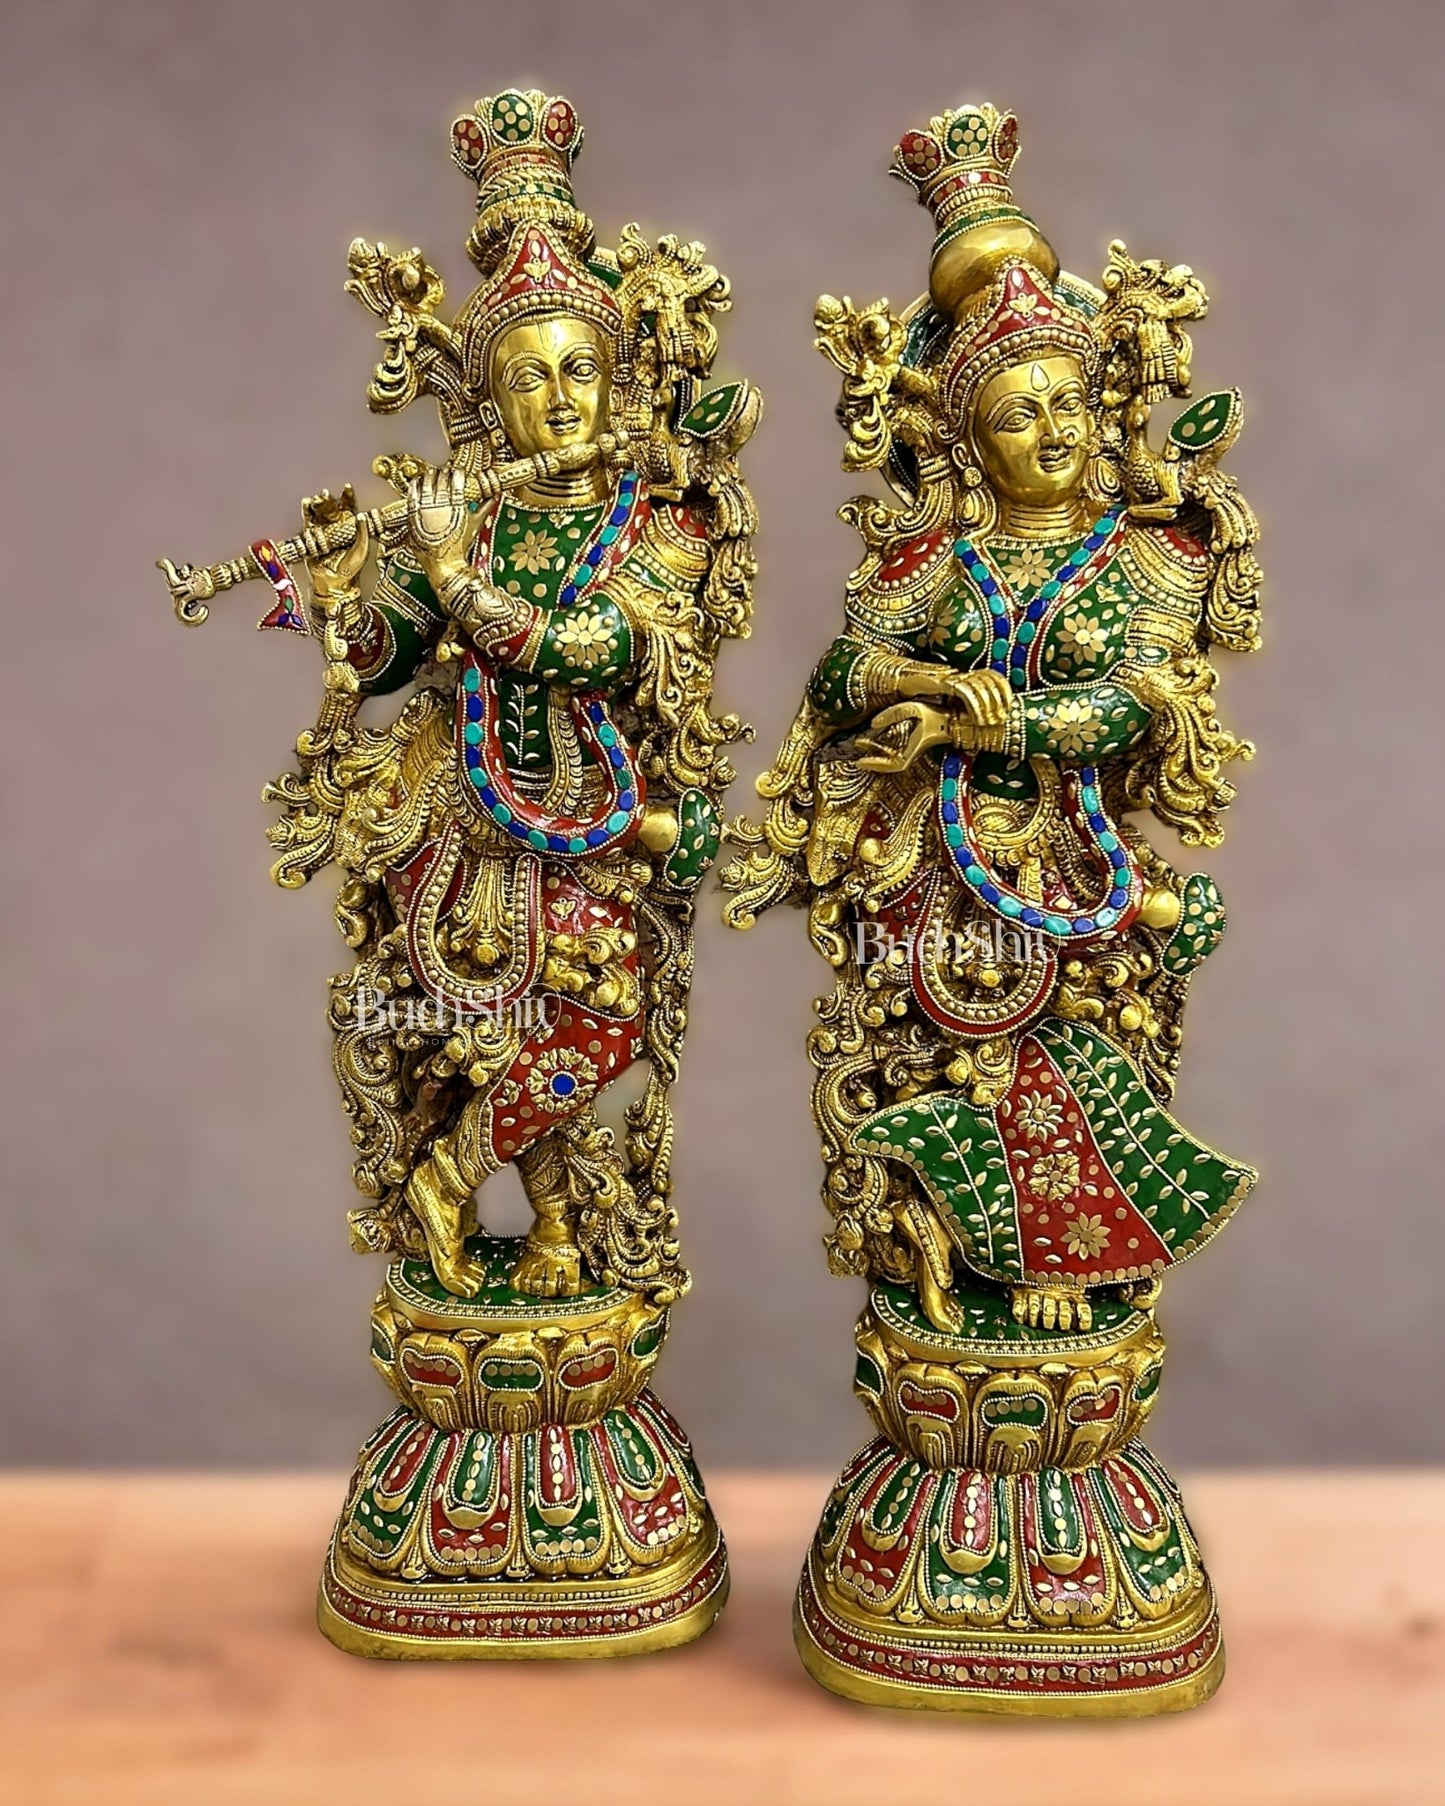 Brass Handcrafted Radha Krishna Idols with Meenakari 30 inch - Budhshiv.com